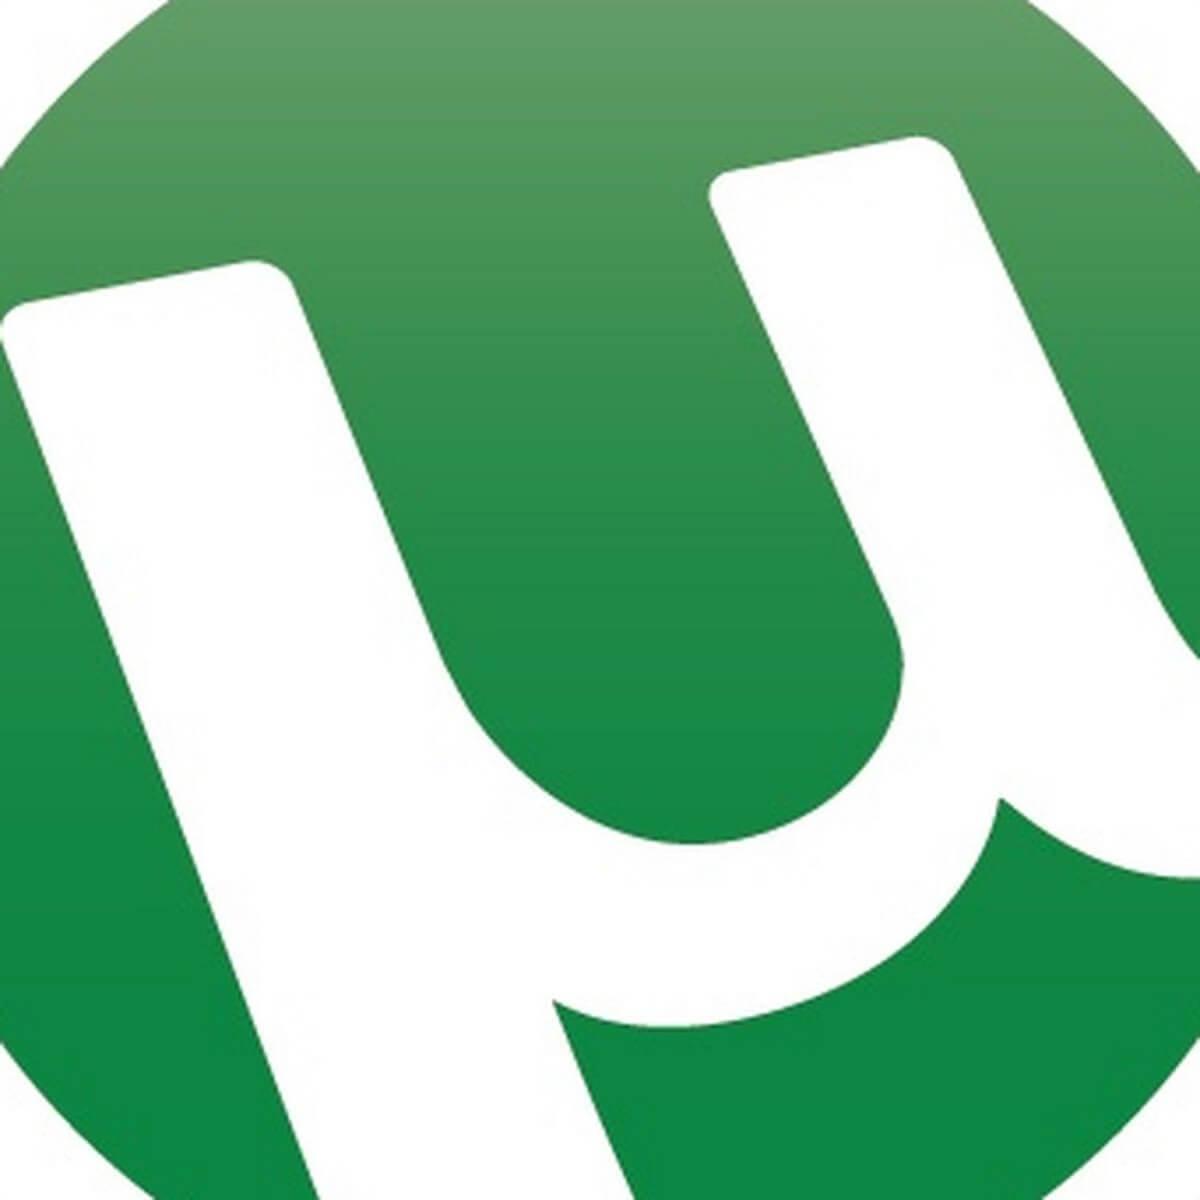 Utorrent Logo - Error files missing from job error in uTorrent [FIX]